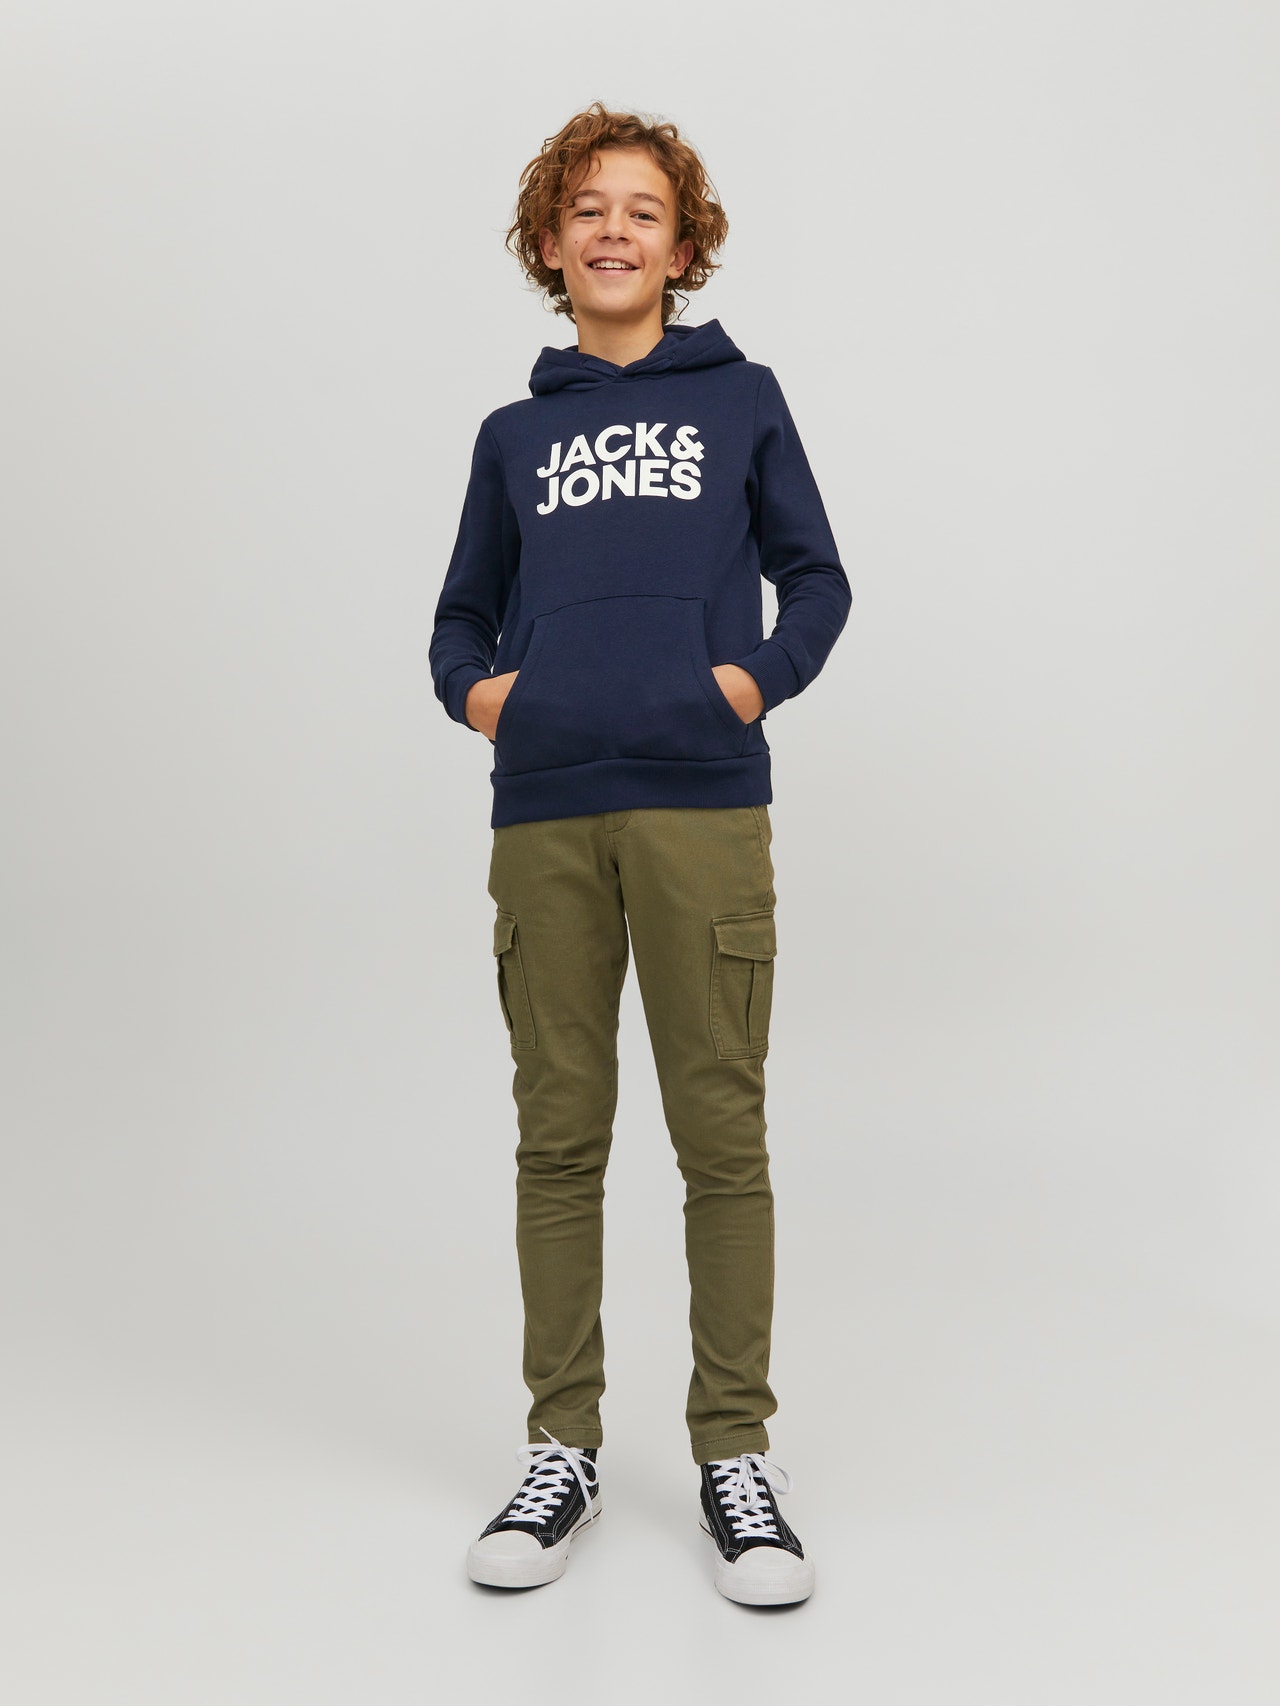 Jack & Jones Confezione da 2 Felpa con cappuccio Con logo Per Bambino -Black - 12210980